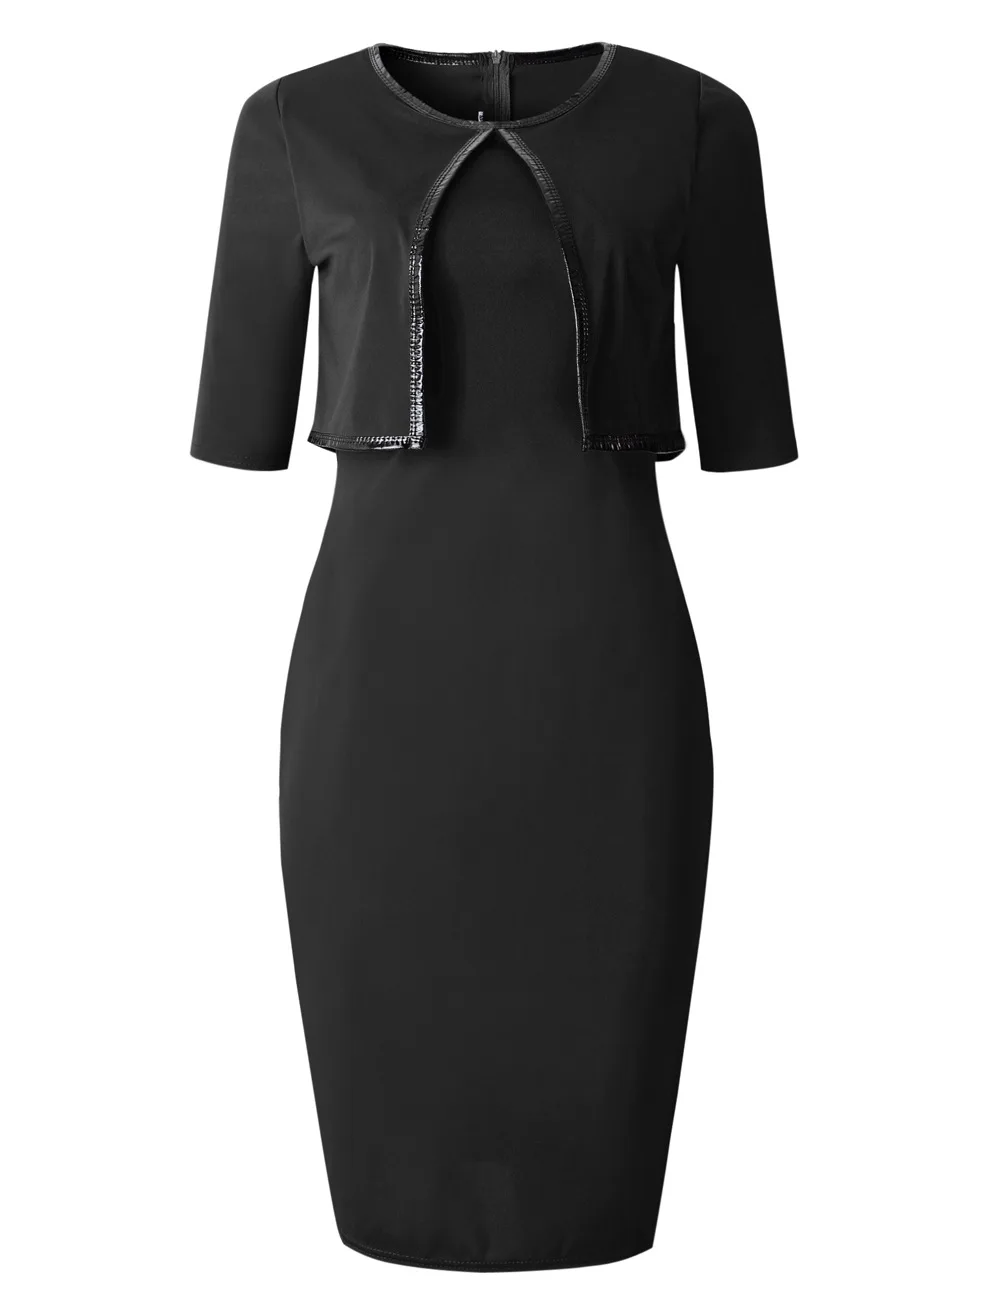 Цельный жакет из искусственной кожи на молнии Женская одежда для работы элегантное офисное платье очаровательное облегающее платье-карандаш миди весенние деловые повседневные платья - Цвет: Черный